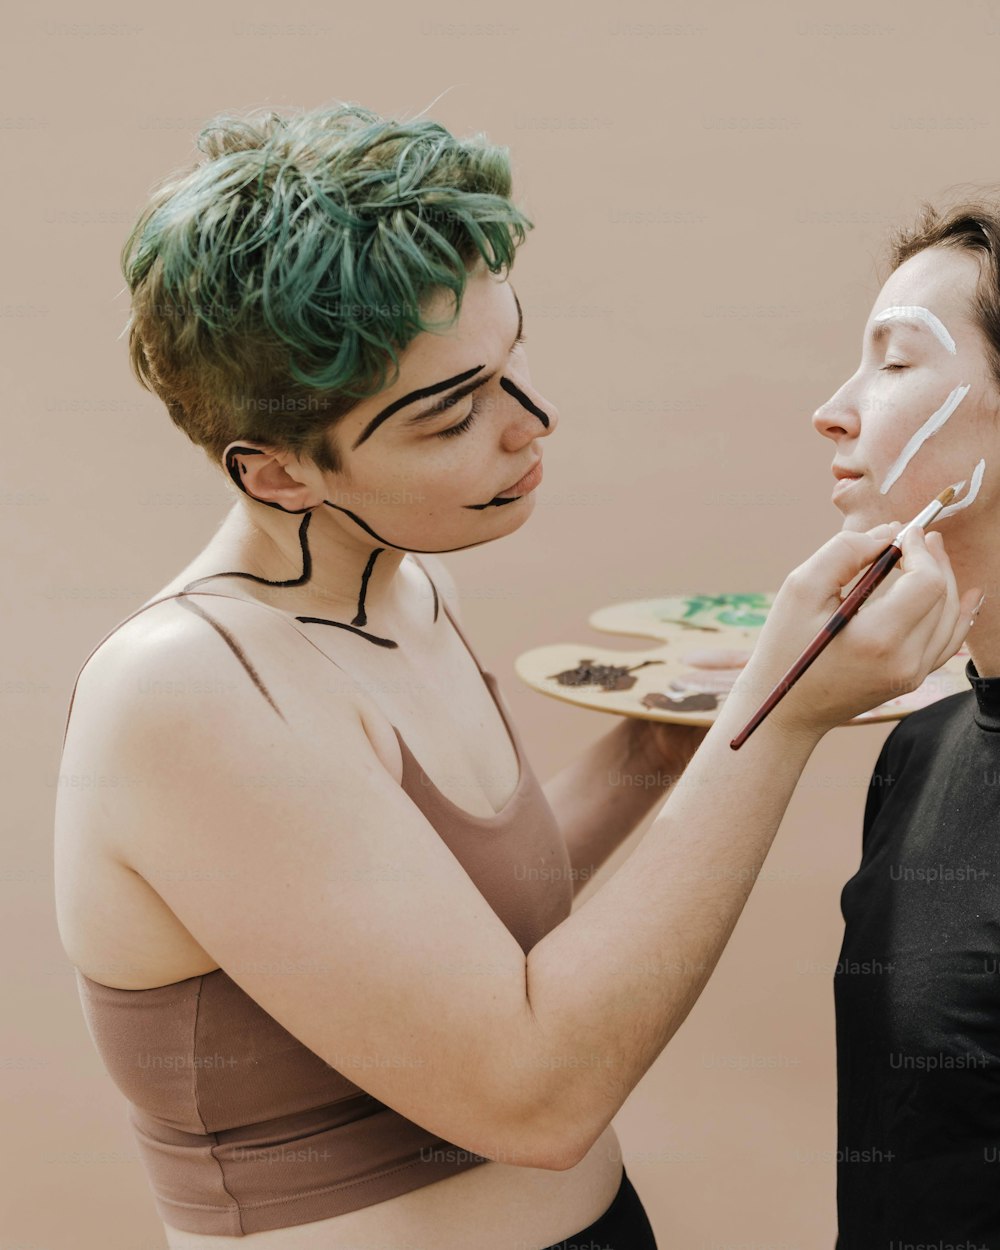 uma mulher com cabelo verde está pintando o rosto de outra mulher